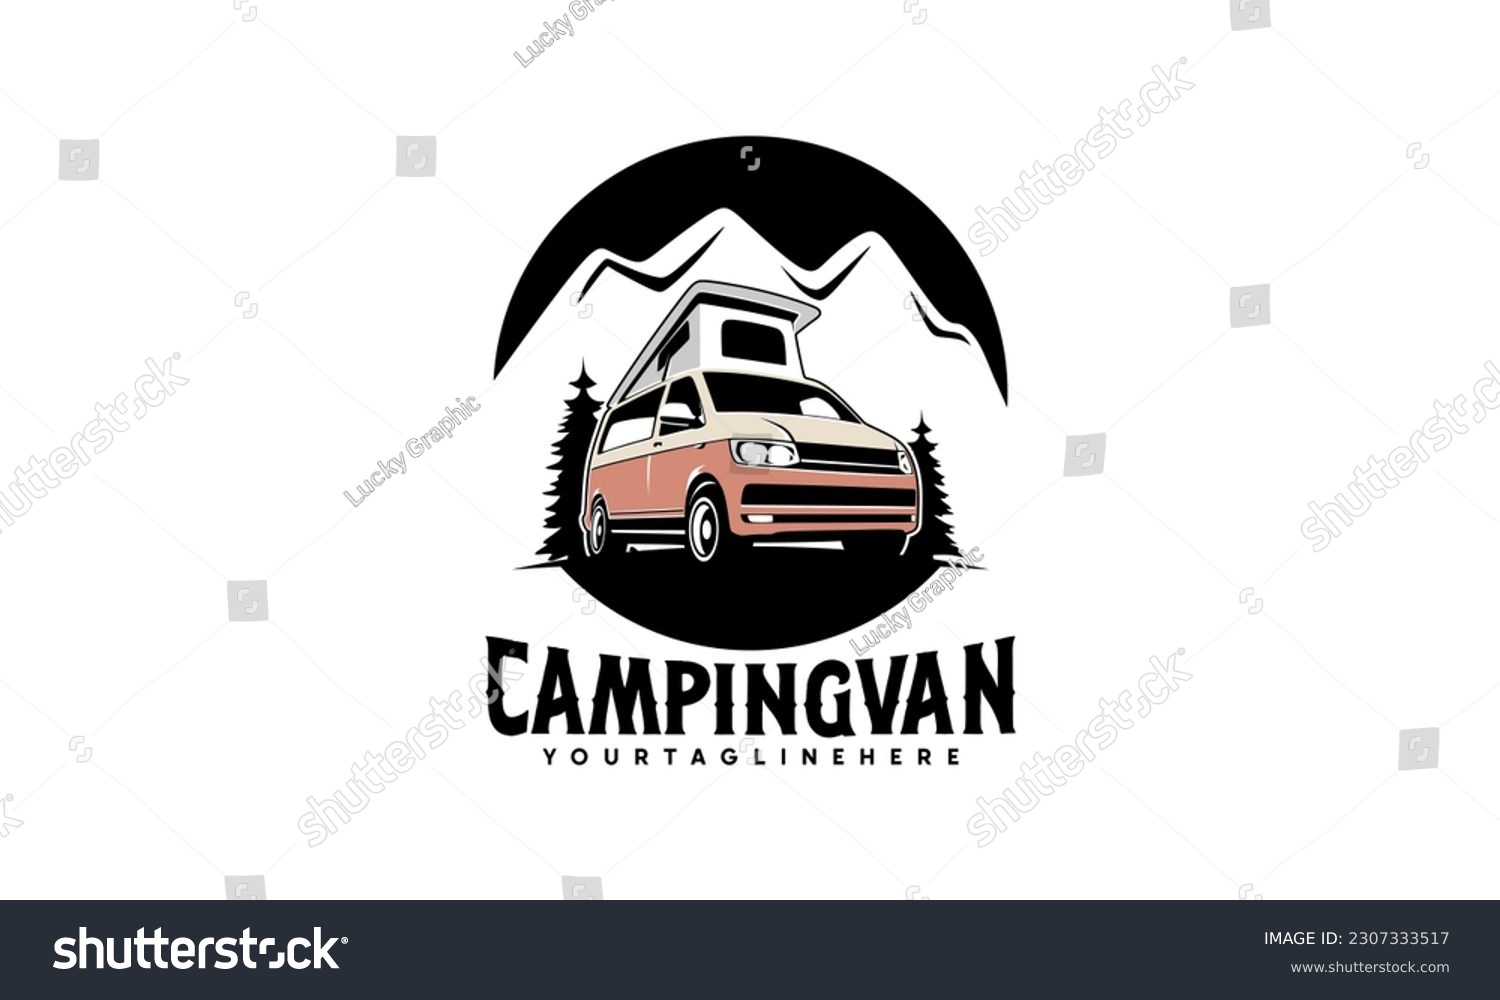 SVG of RV camper van classic style logo vector illustration, camper van with pop up - roof top tent illustration logo design svg